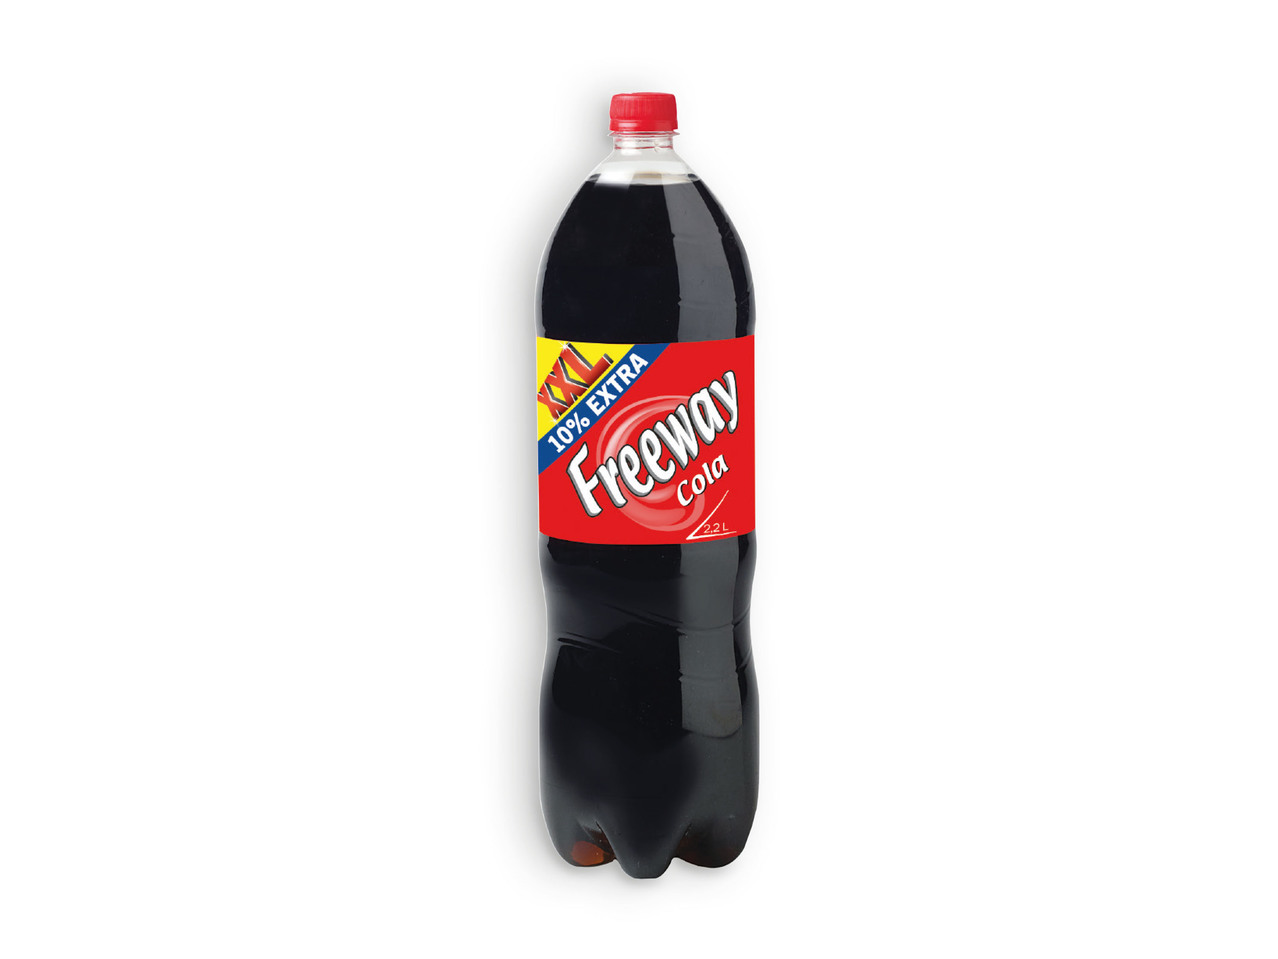 FREEWAY(R) Cola